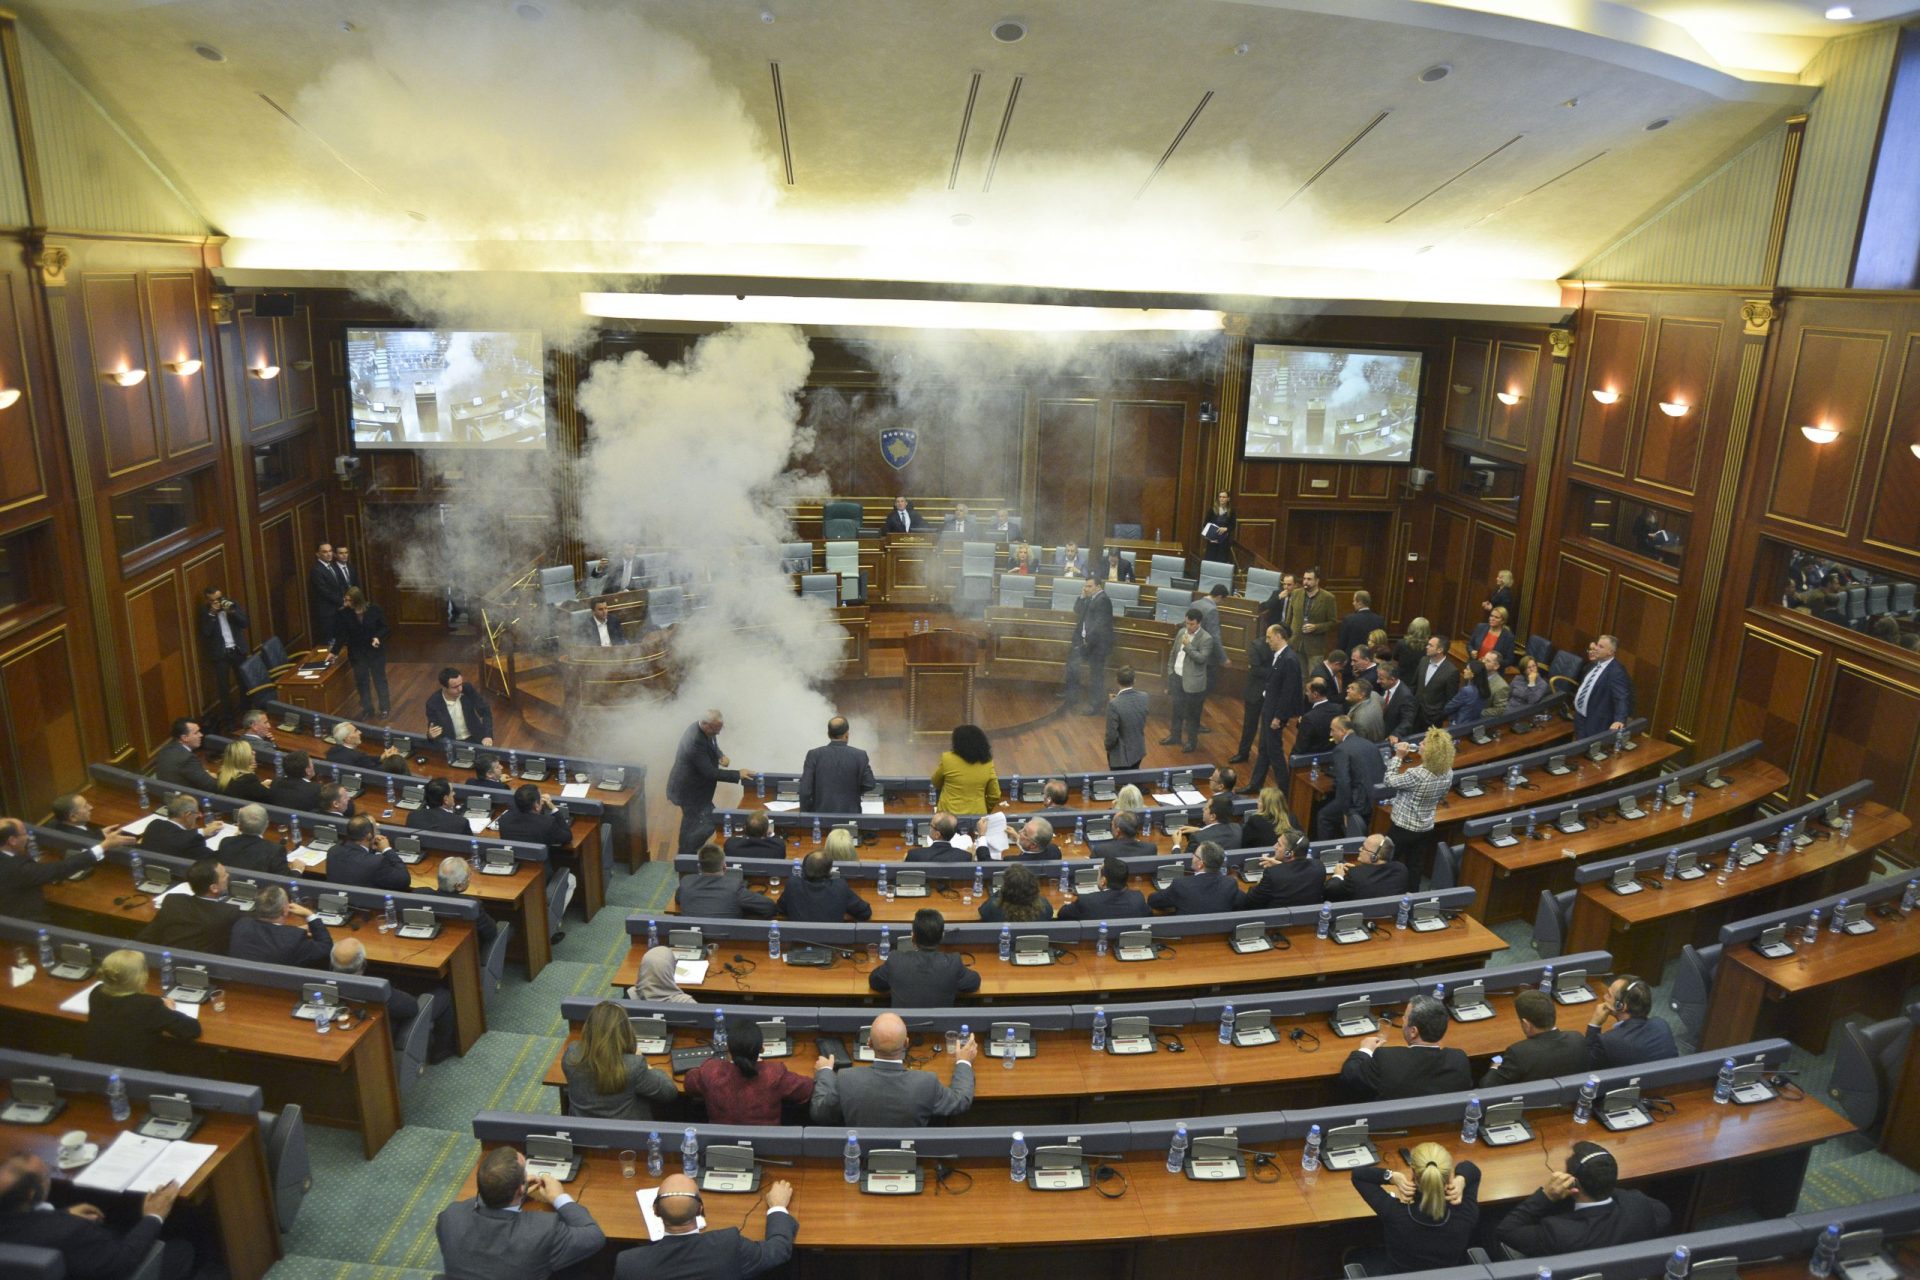 Caos no Parlamento no Kosovo. Oposição lança gás, duas deputadas desmaiam [vídeo]